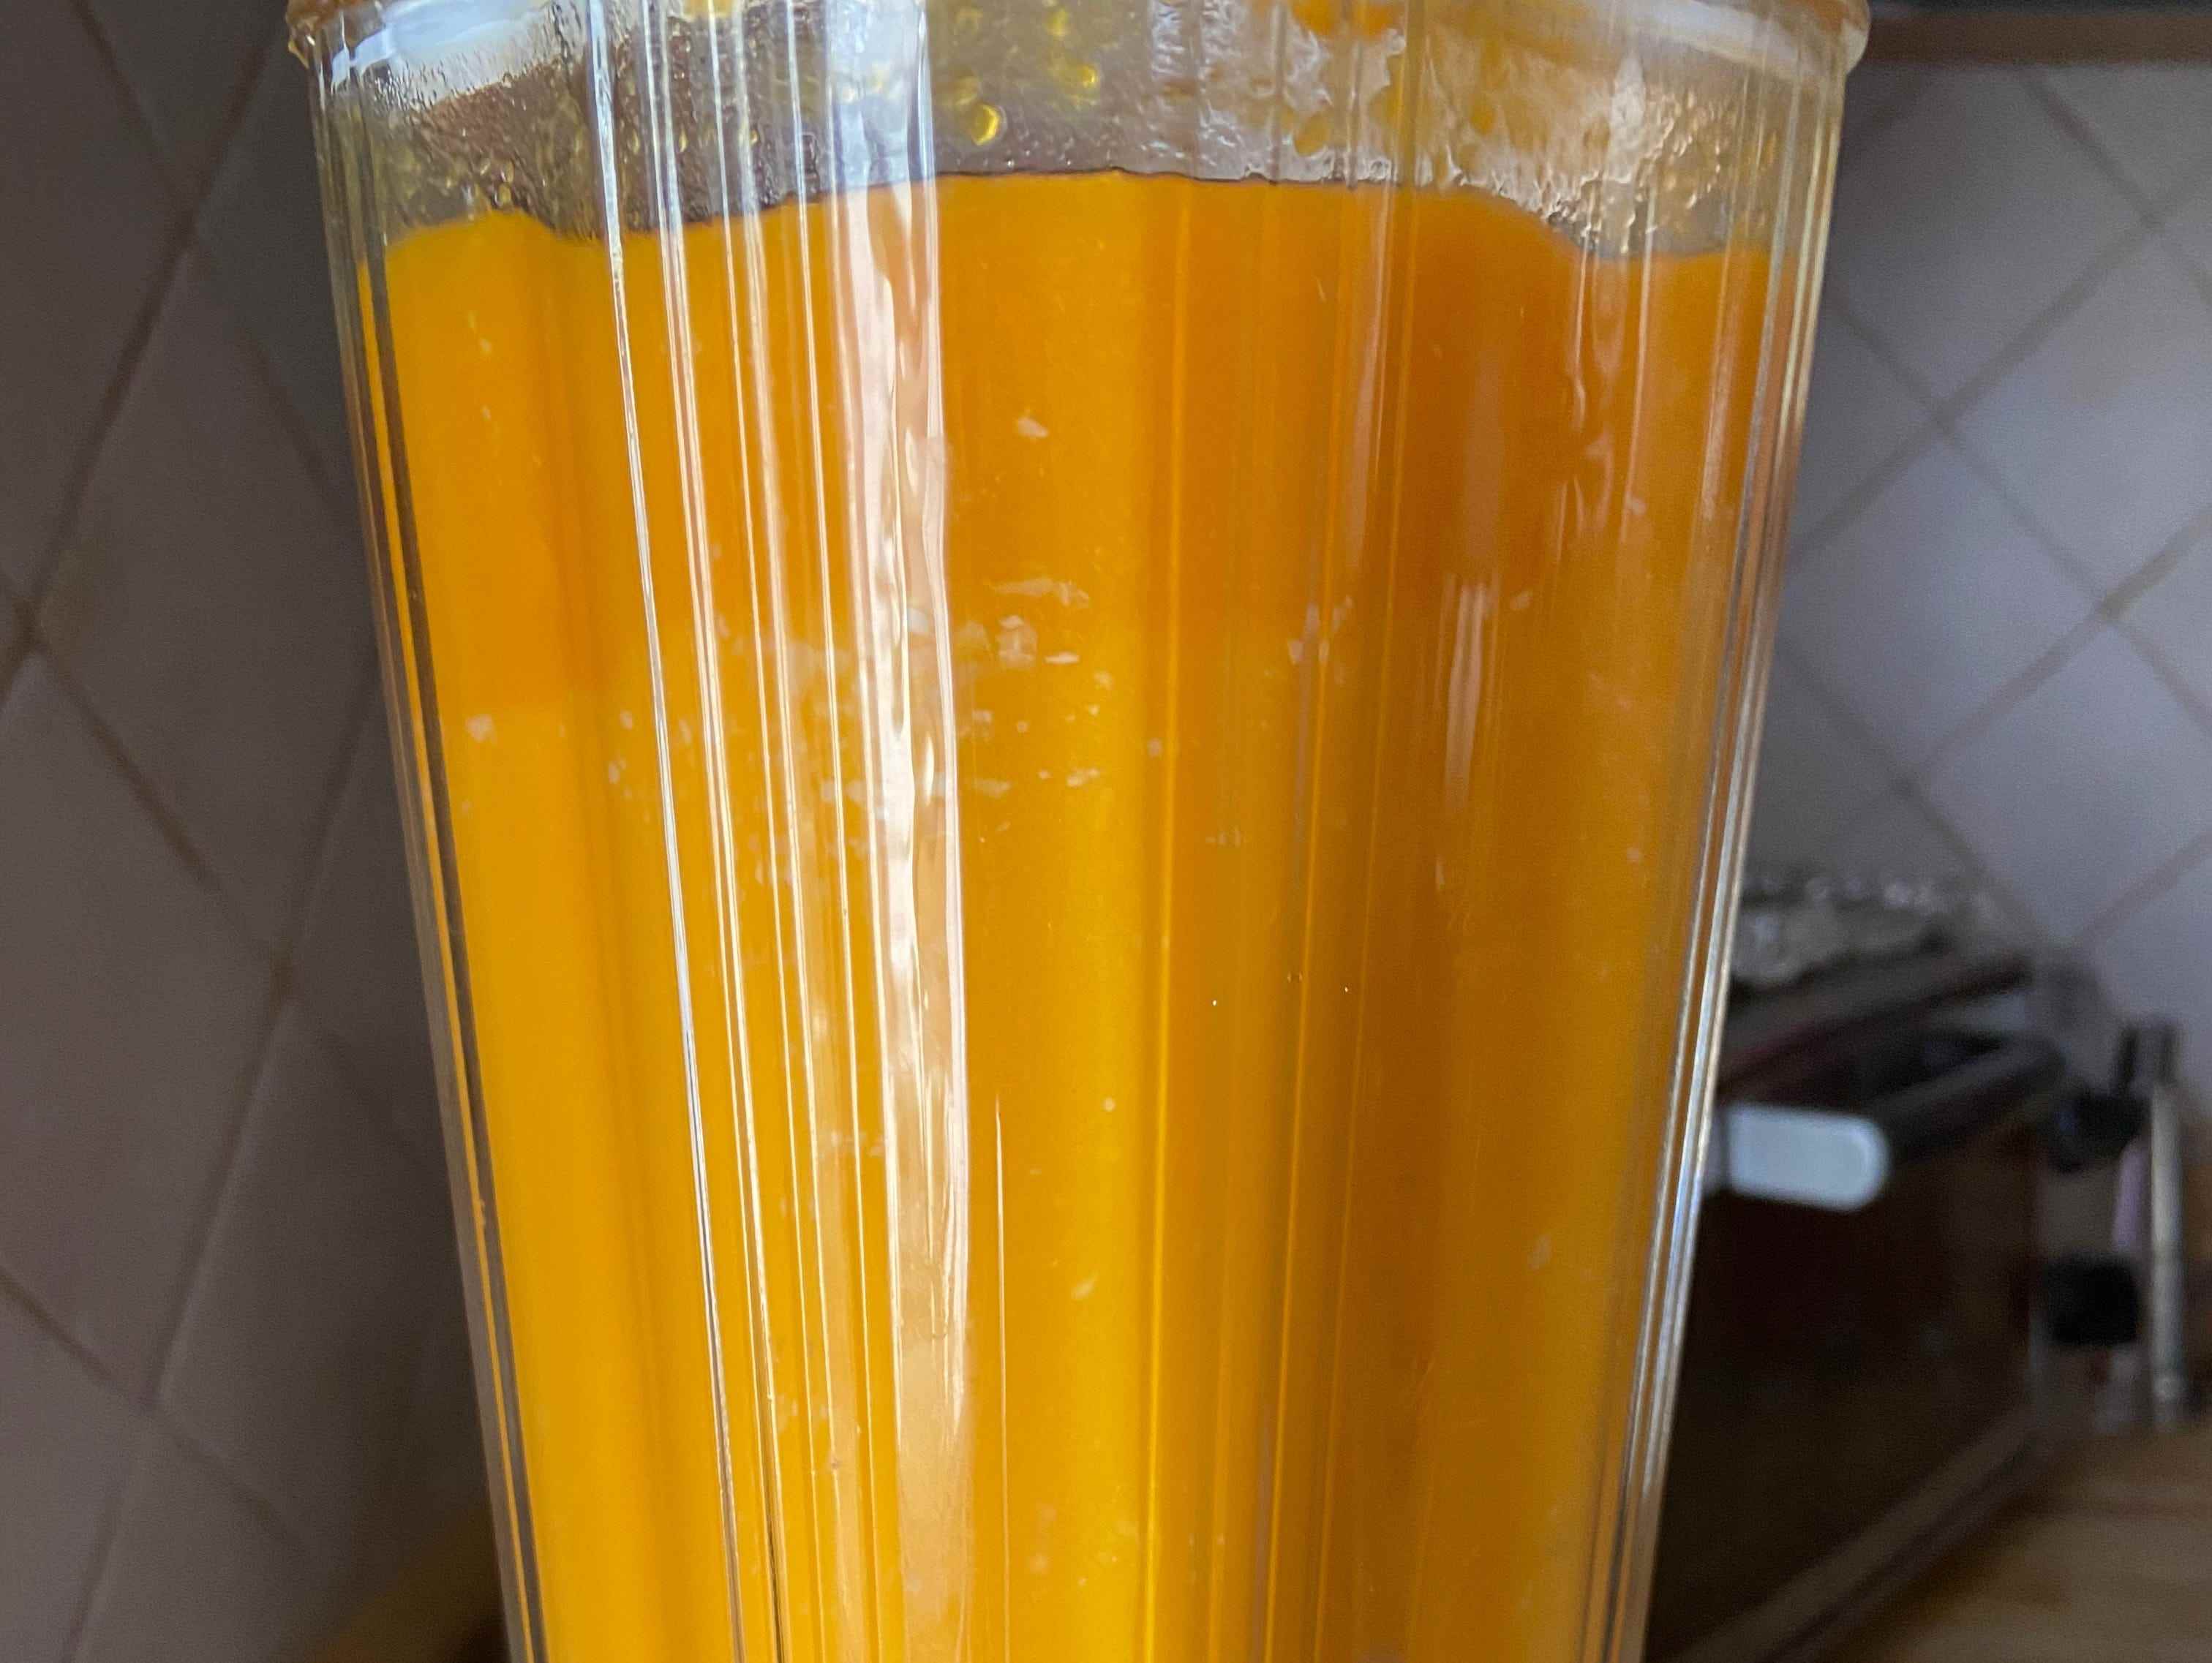 Ein Mixer gefüllt mit Orangenkürbis